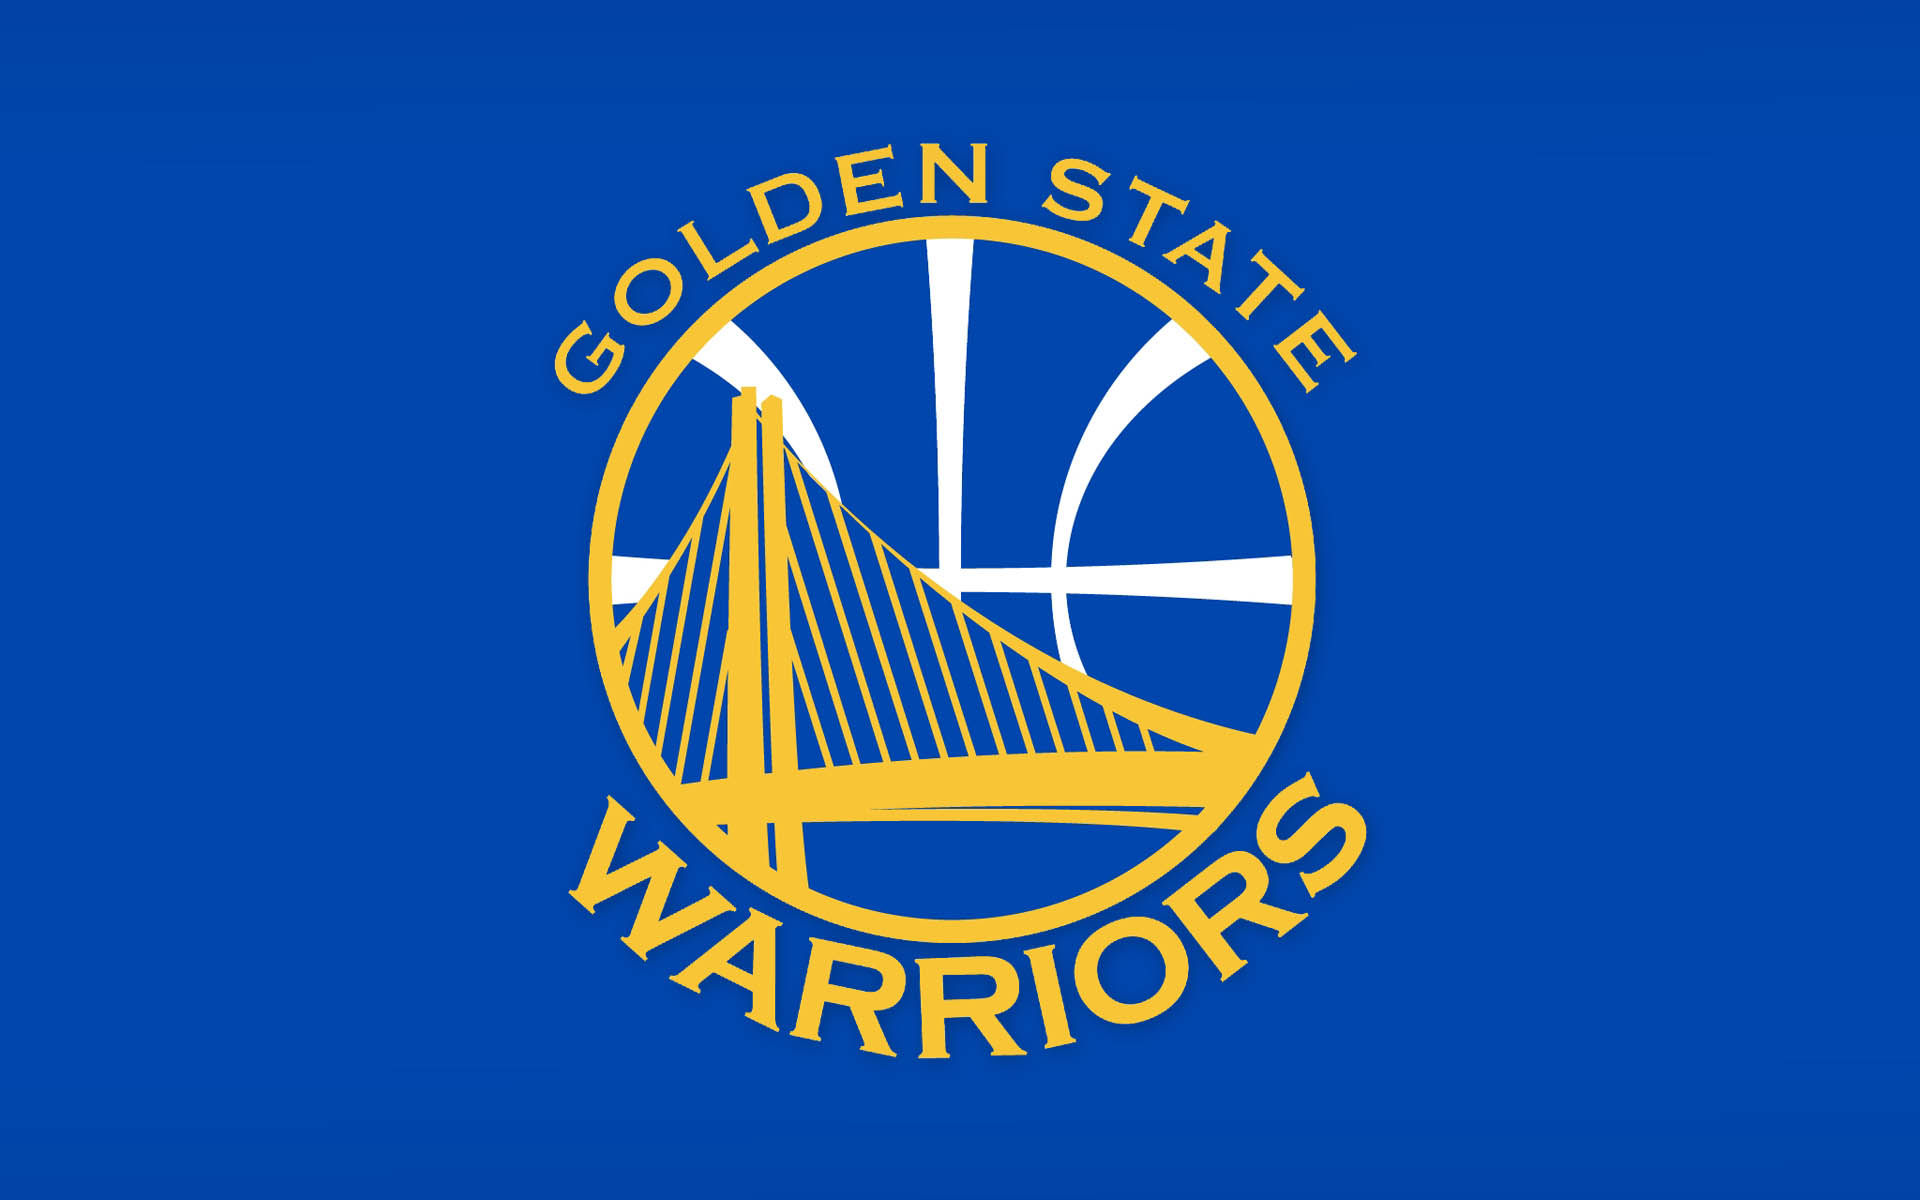 GOLDEN STATE WARRIORS Nba Basketball logo over blue screen Wallpaper